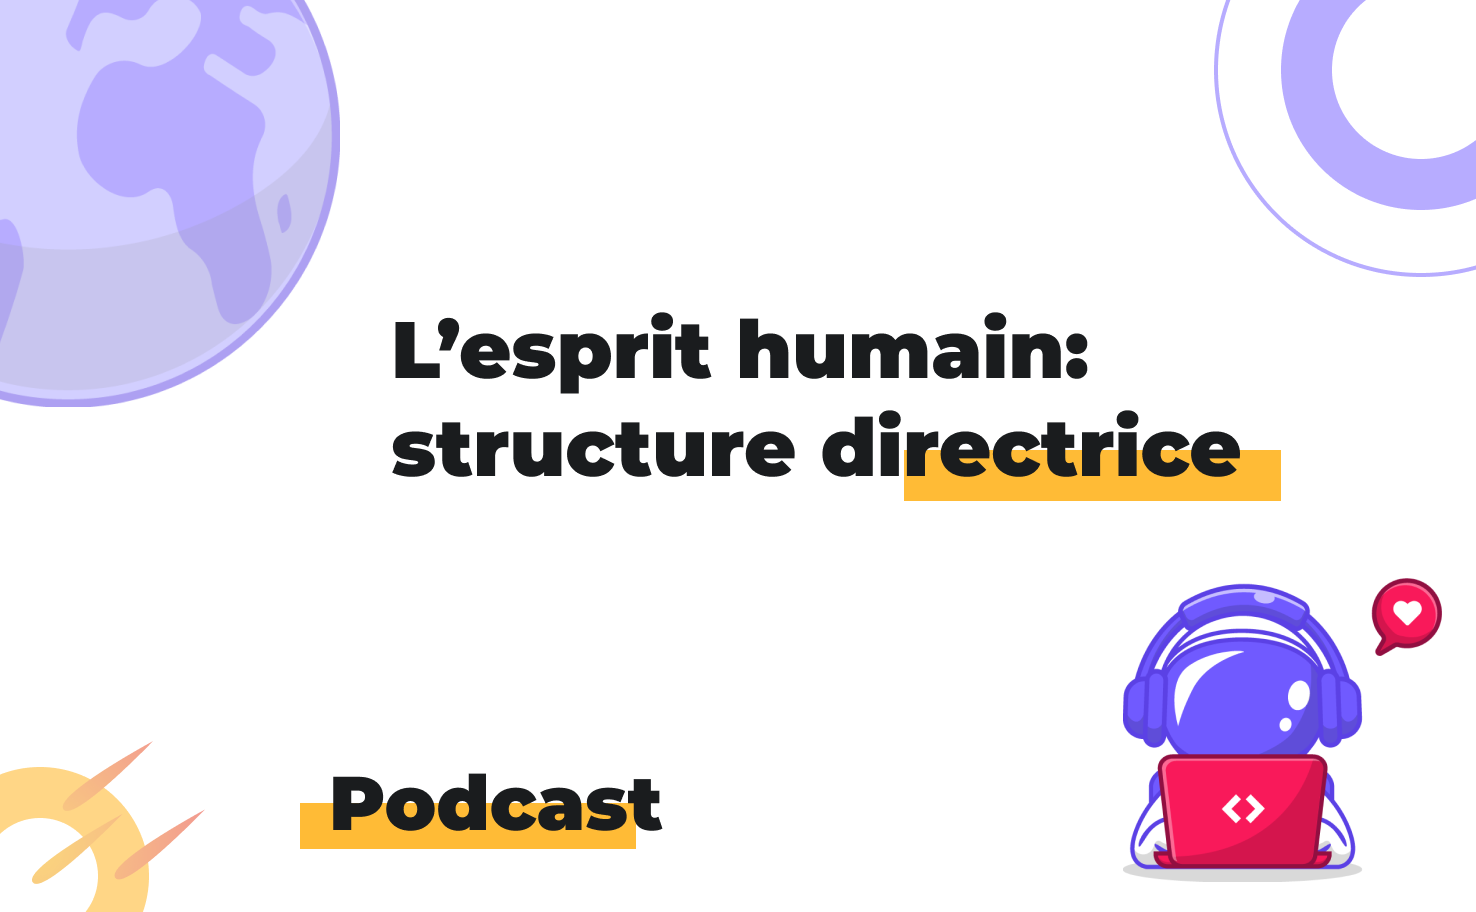 L'image affiche le sujet du podcast: L'esprit humain et la structure directrice